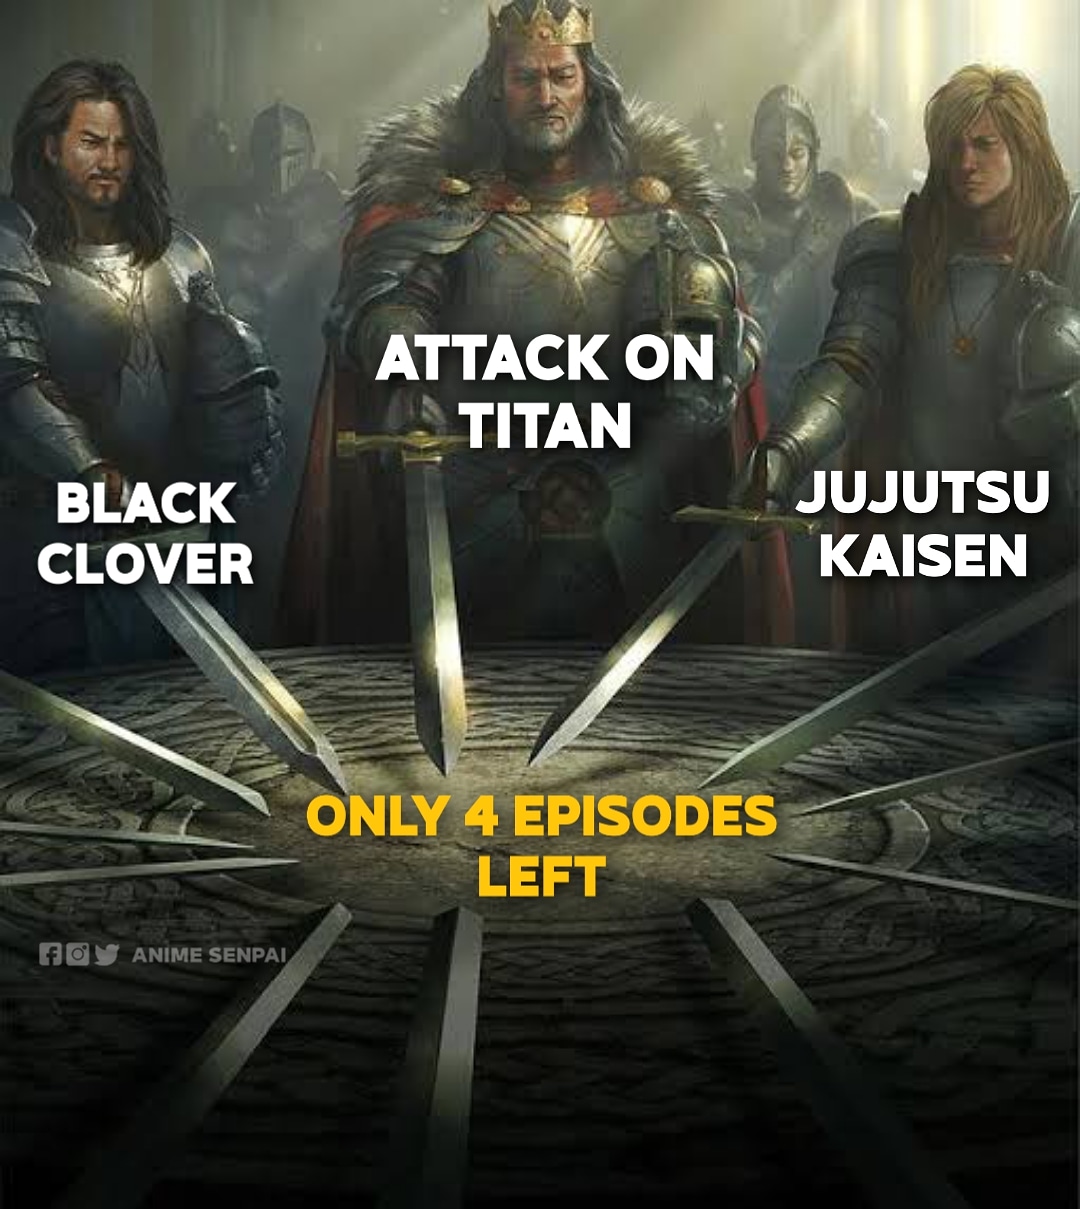 Just like Attack on Titan : JuJutsuKaisen